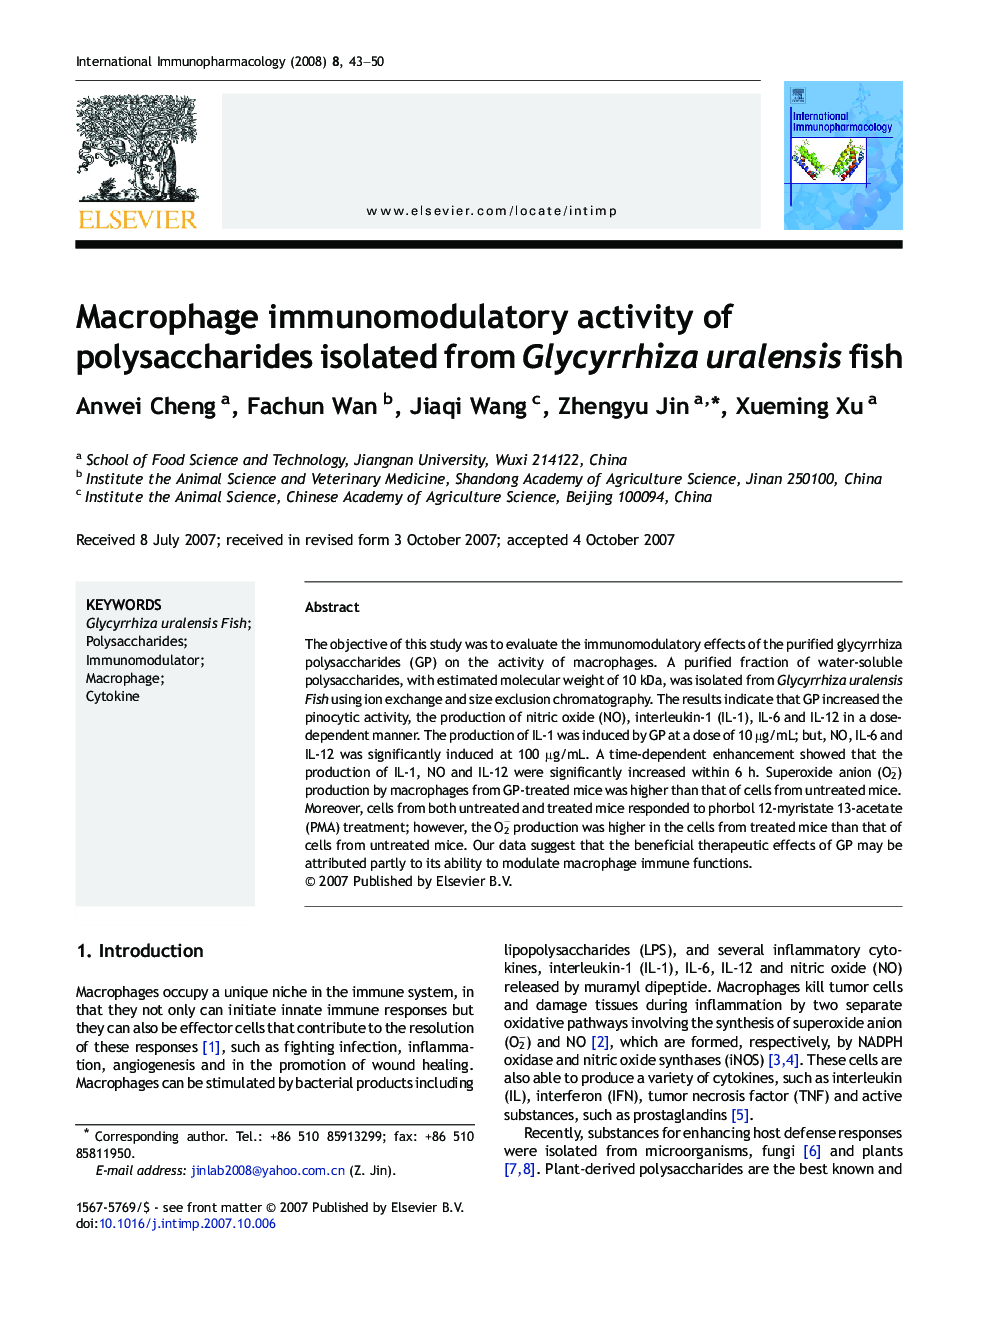 Macrophage immunomodulatory activity of polysaccharides isolated from Glycyrrhiza uralensis fish